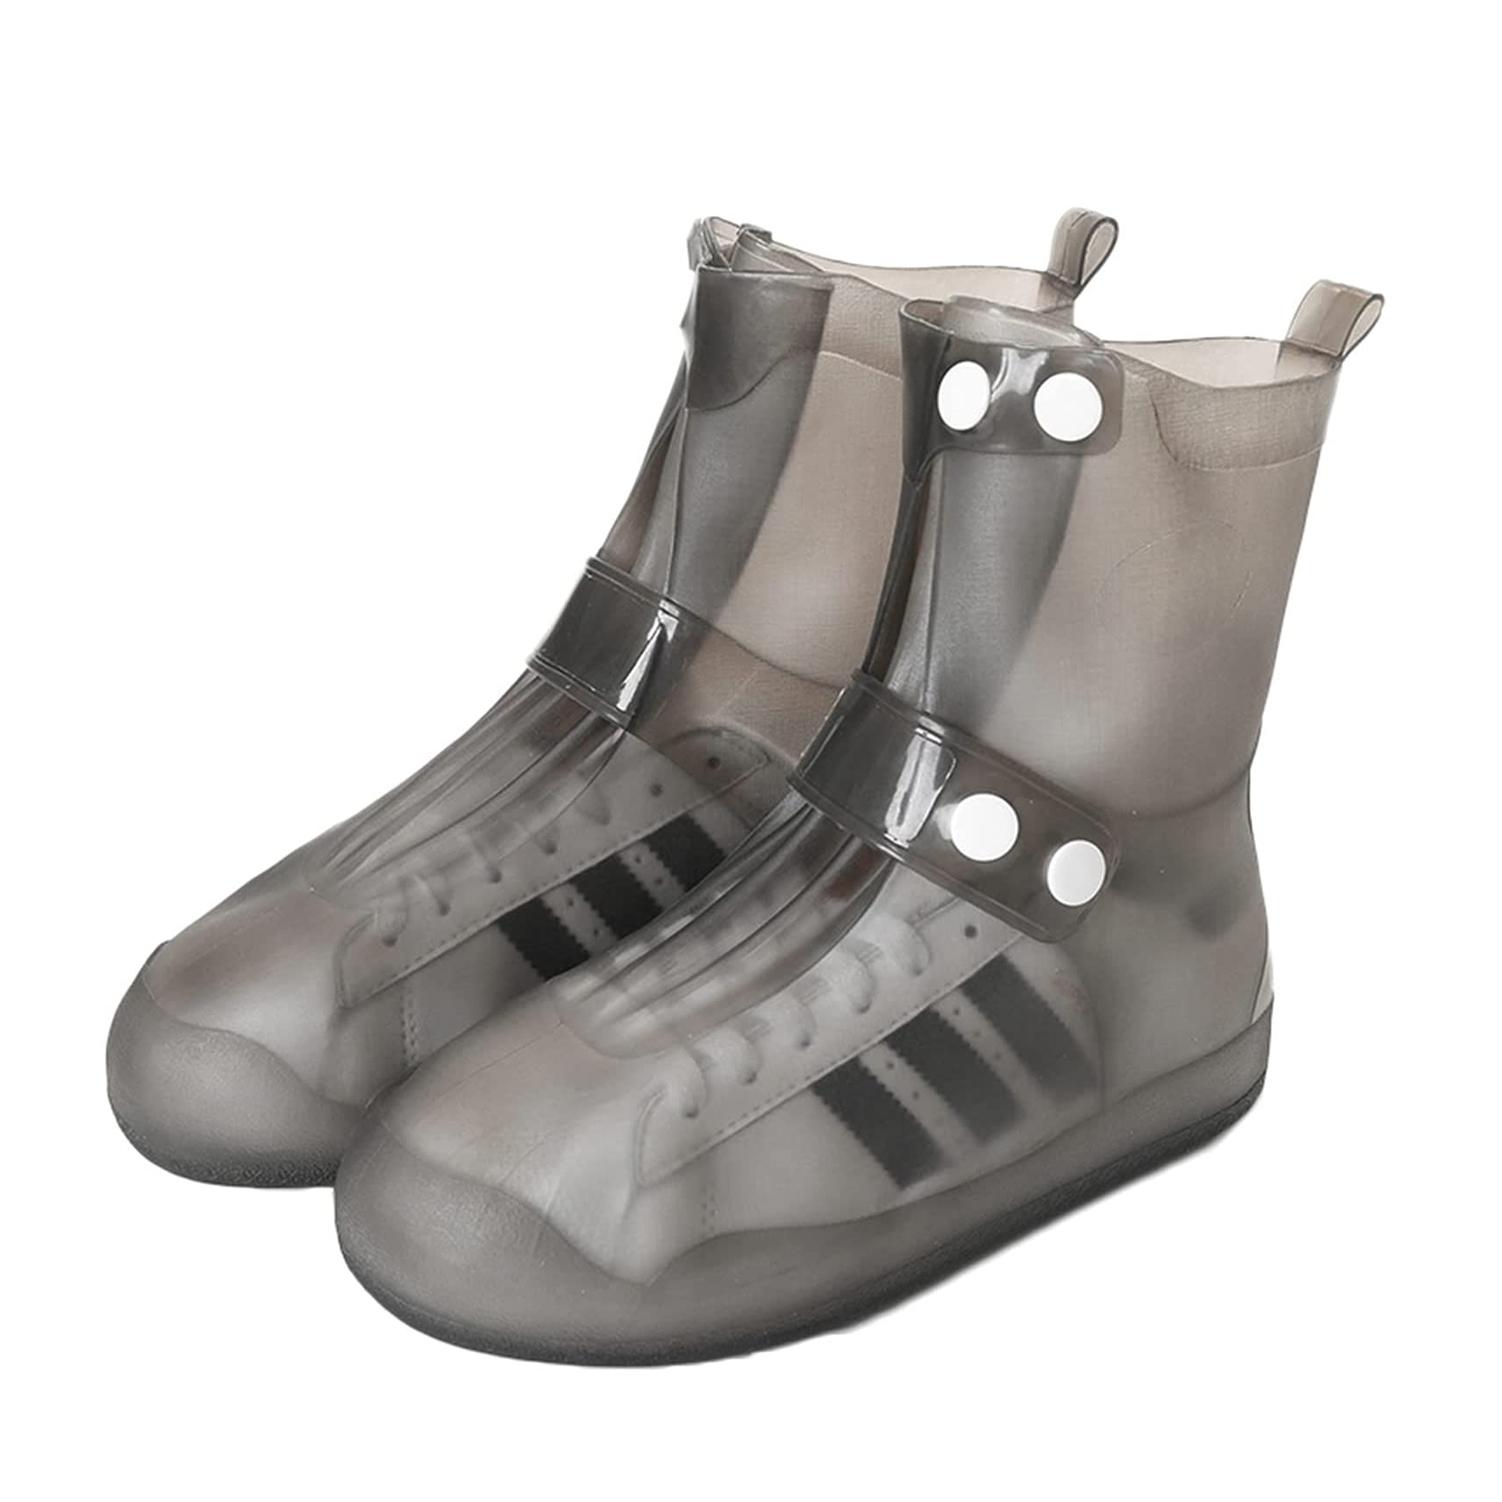 Фото 1 Cиликоновые чехлы-бахилы для обуви с застежкой размер M 40-41 CG WSS3 Black